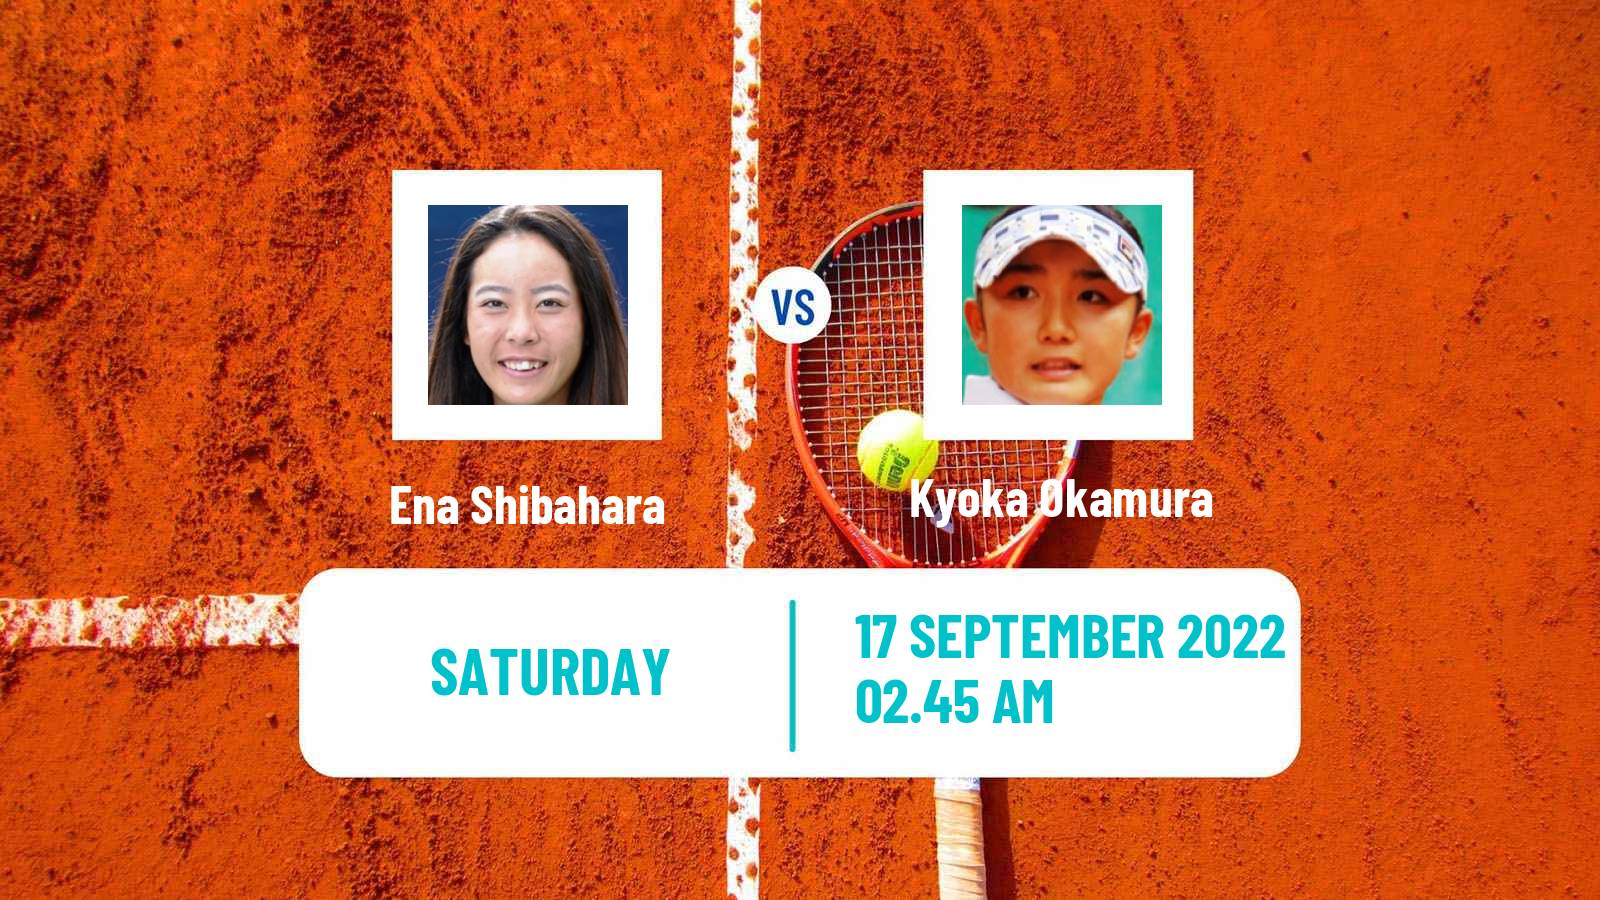 Tennis WTA Tokyo Ena Shibahara - Kyoka Okamura